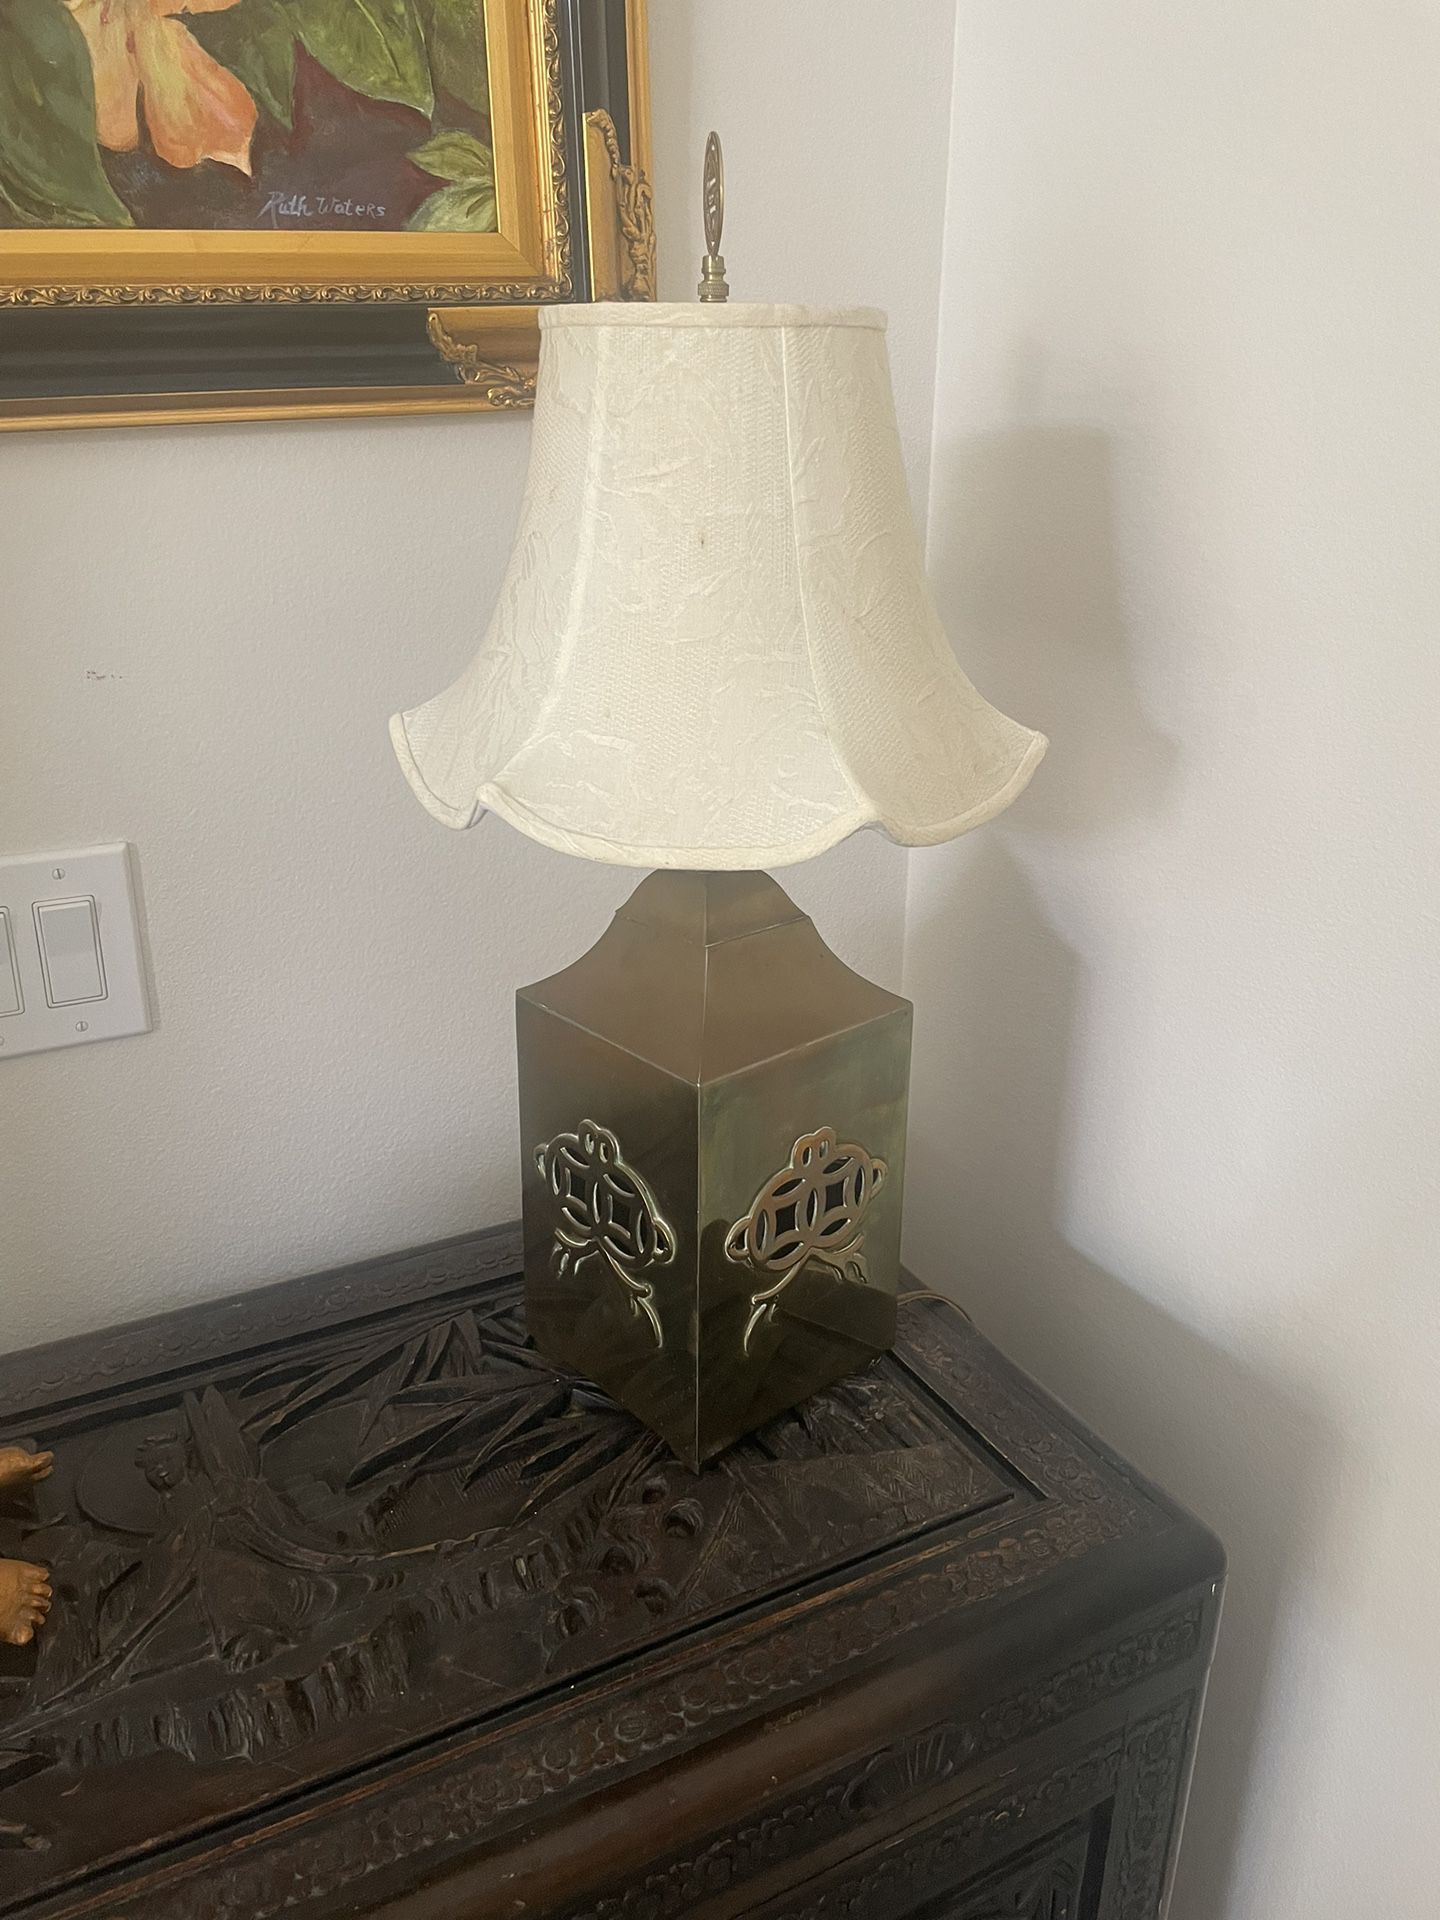 Chinese Type Lamp